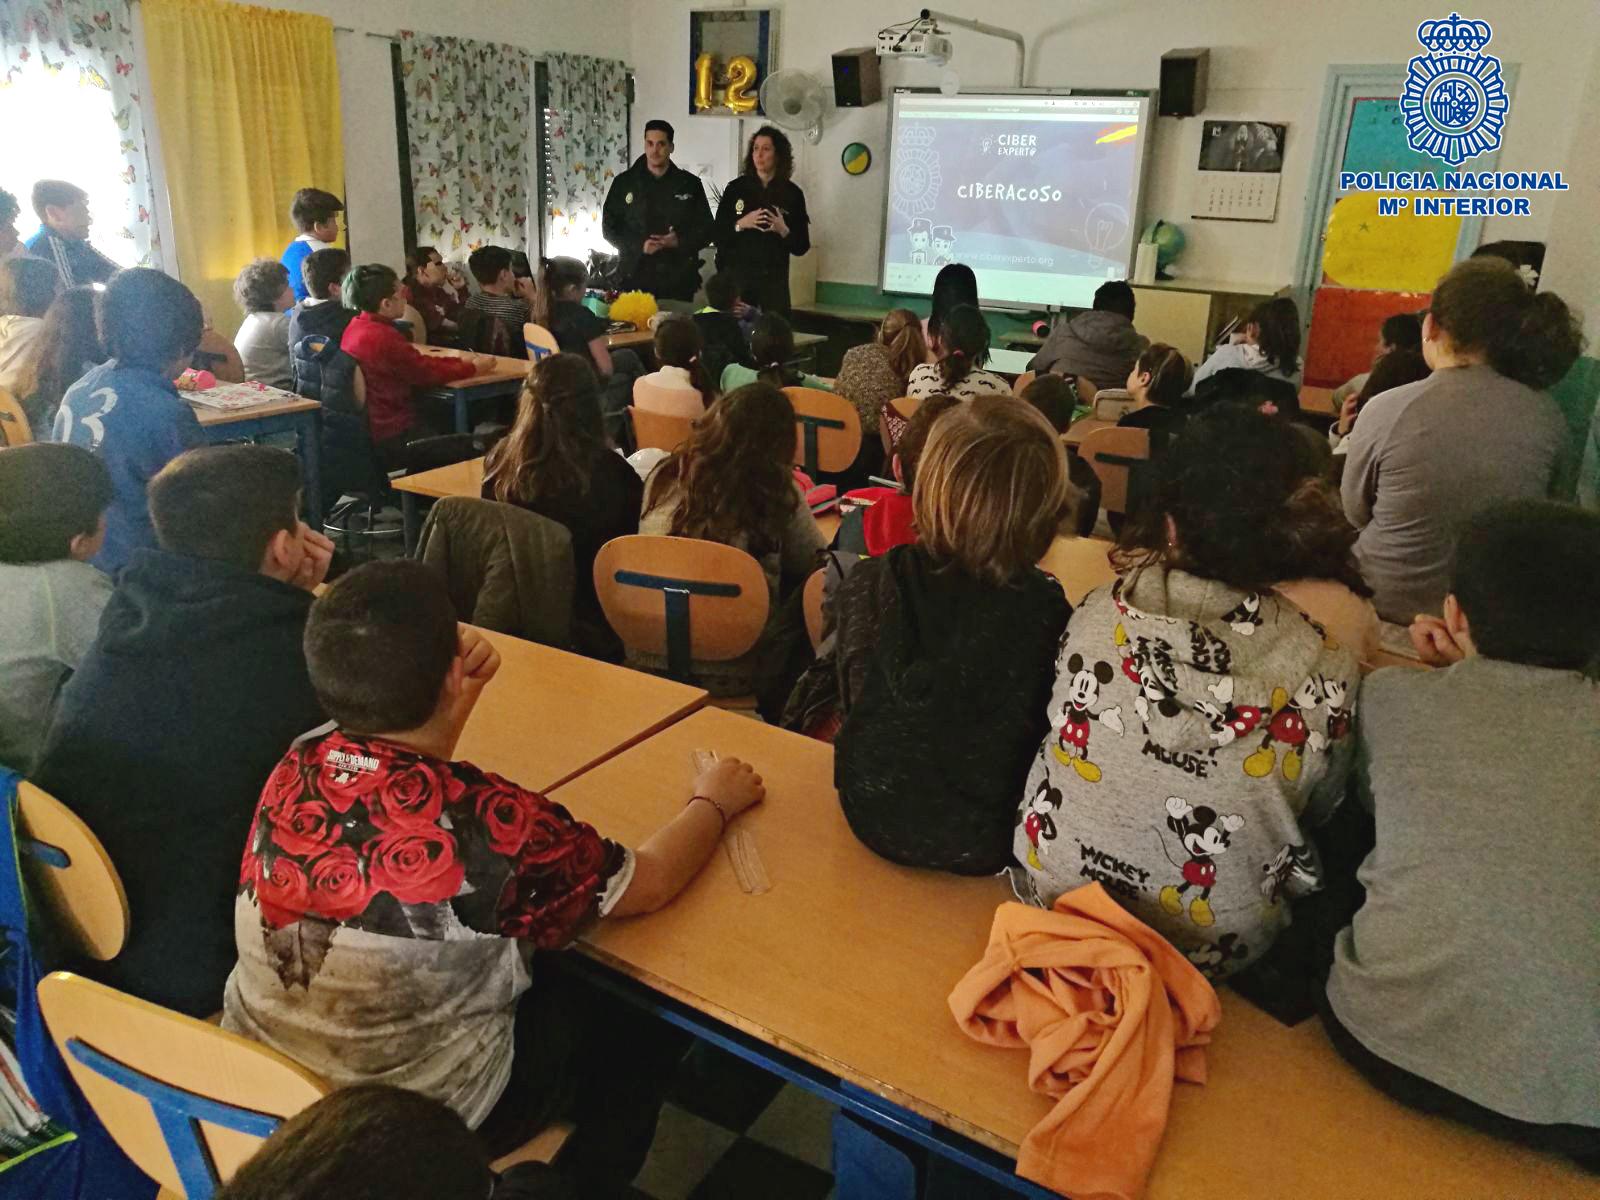 La Policía Nacional ha formado en Jerez a más de 3.150 alumnos a través del Plan Director durante el pasado curso